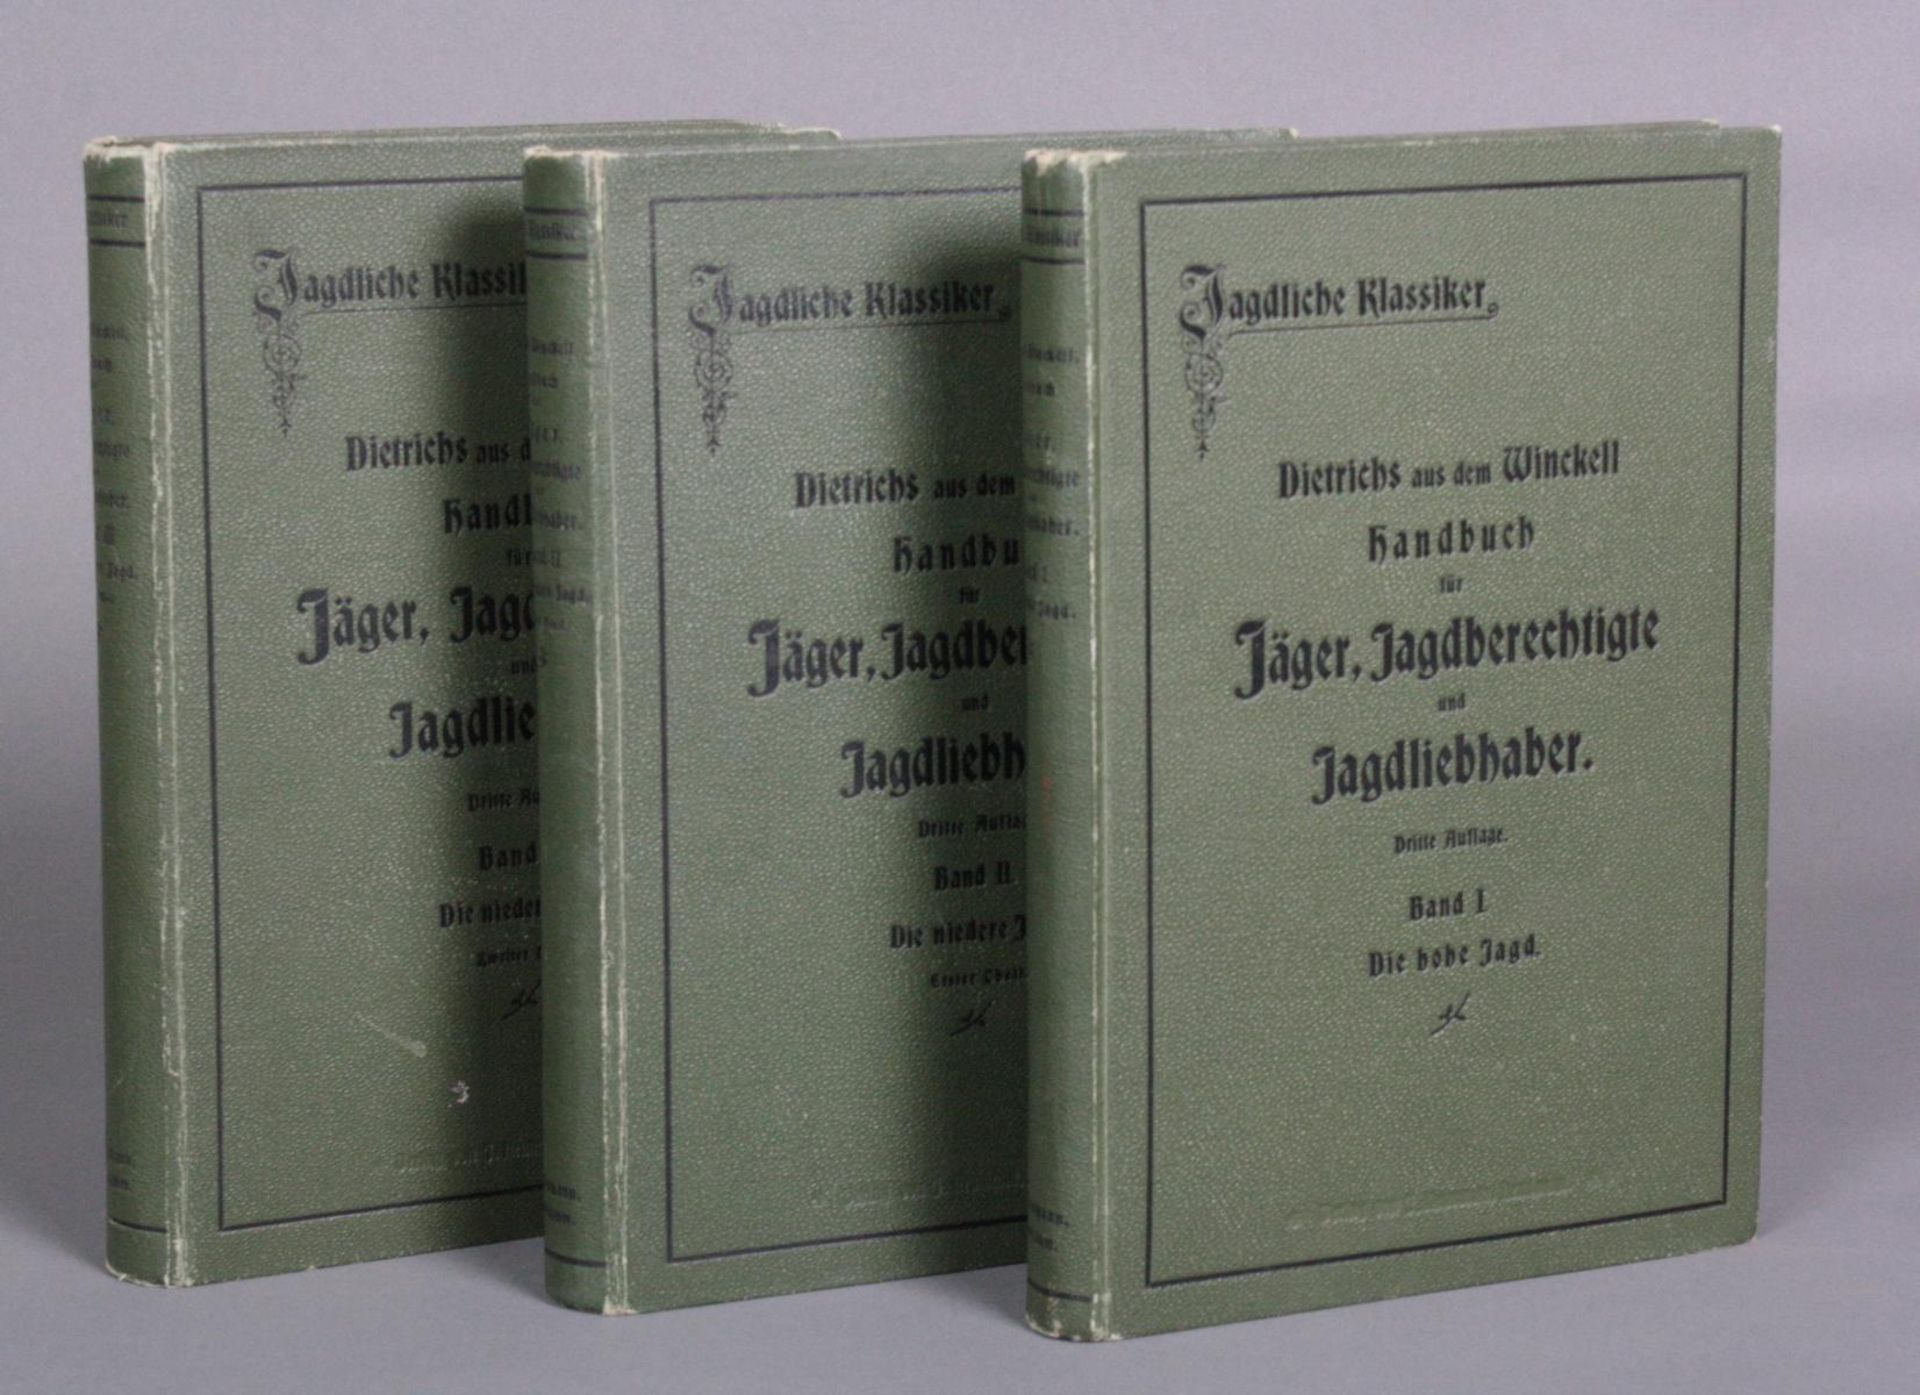 Handbuch für Jäger in Drei Bänden. Dietrichs aus dem Winckell, Band I-III - Bild 2 aus 6